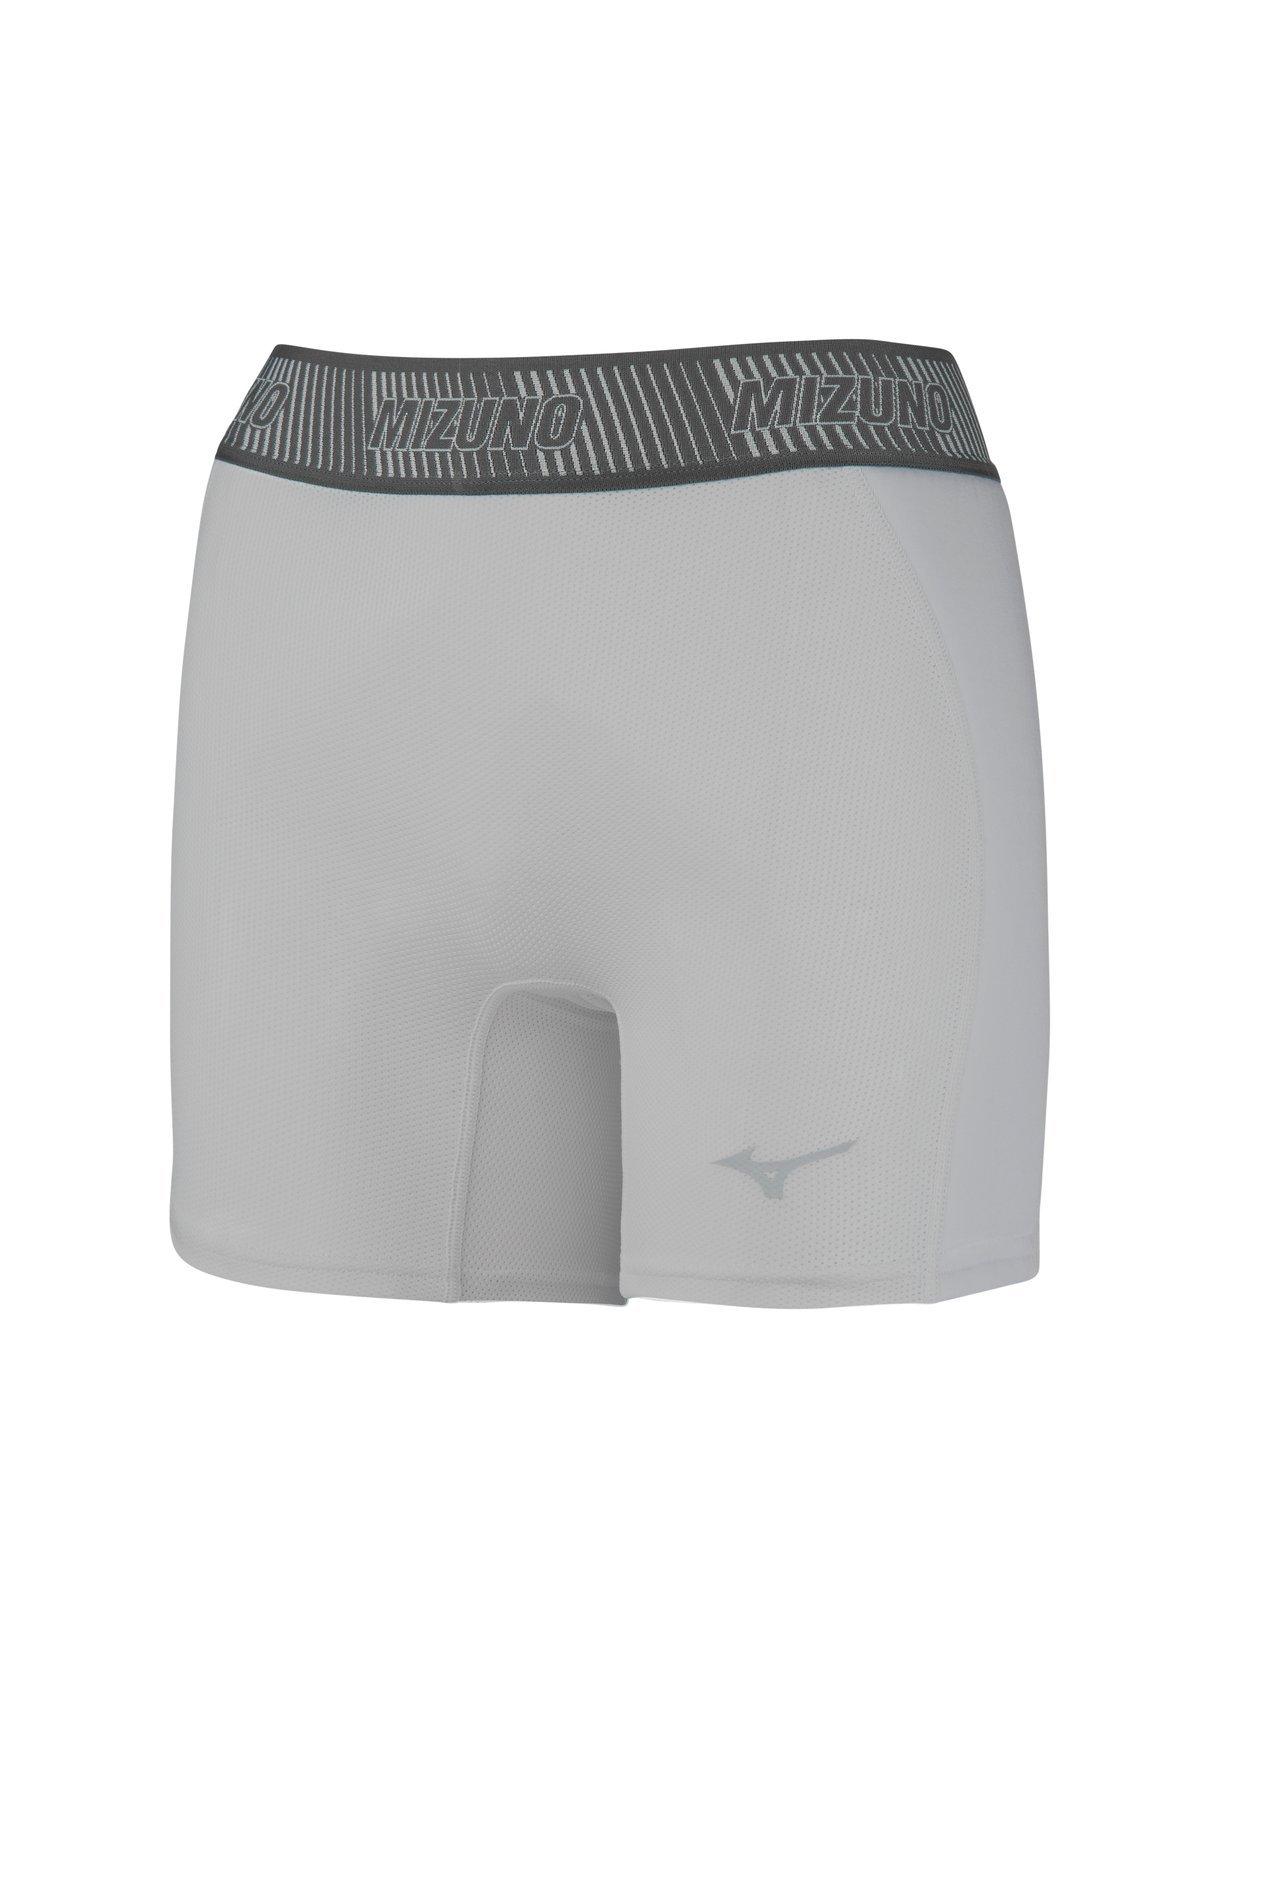 Softball Underwear | Softball Sliders for Women & Girls - Mizuno USA